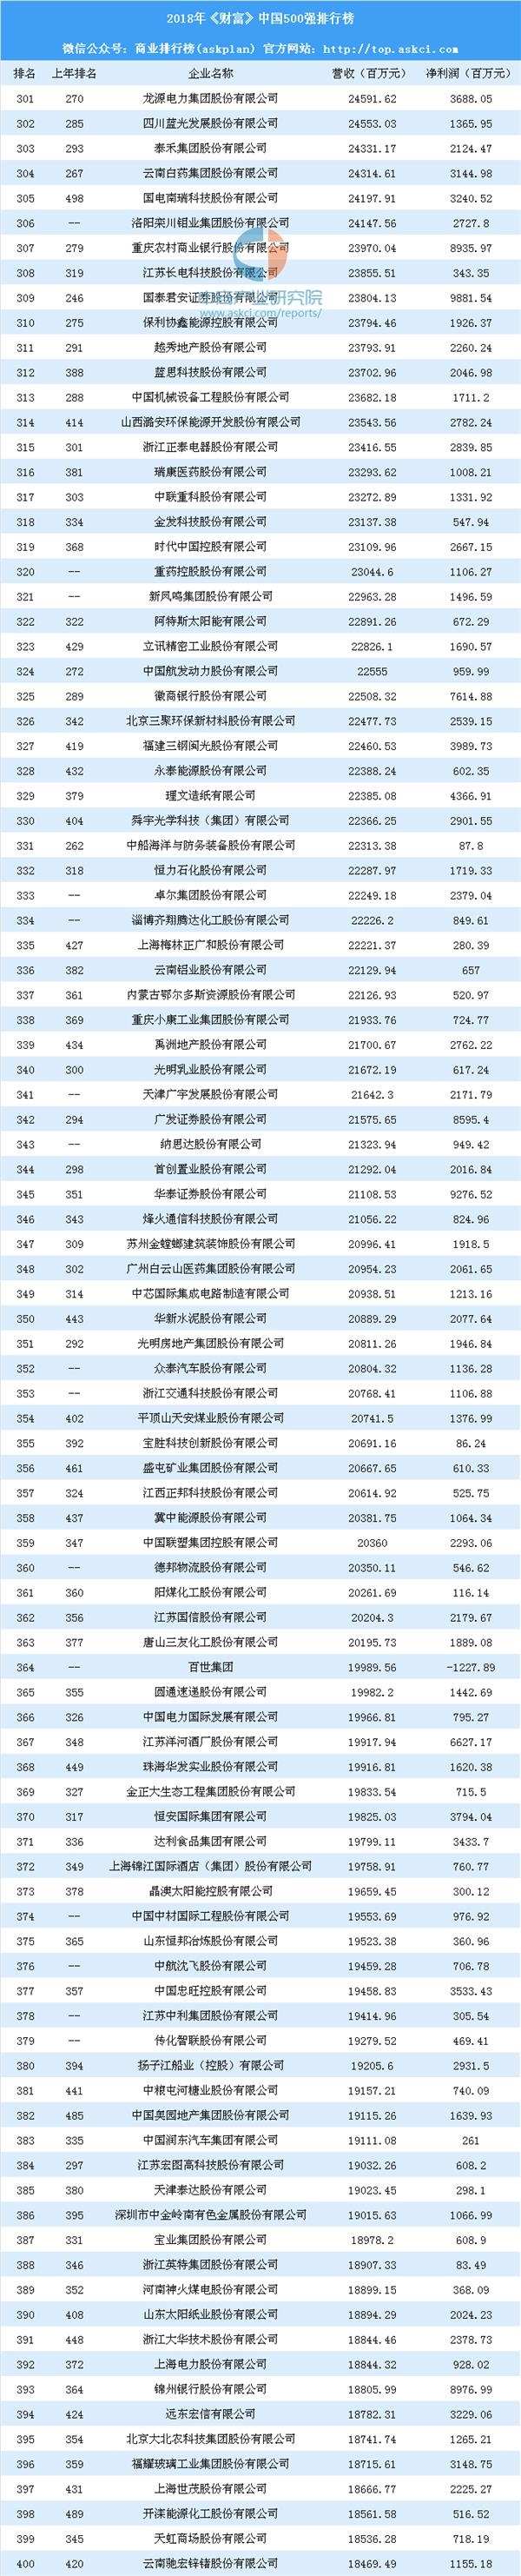 名字排行第一_2018年中国500强排行榜:中石化第一平安排名前进1名(附完整榜单)